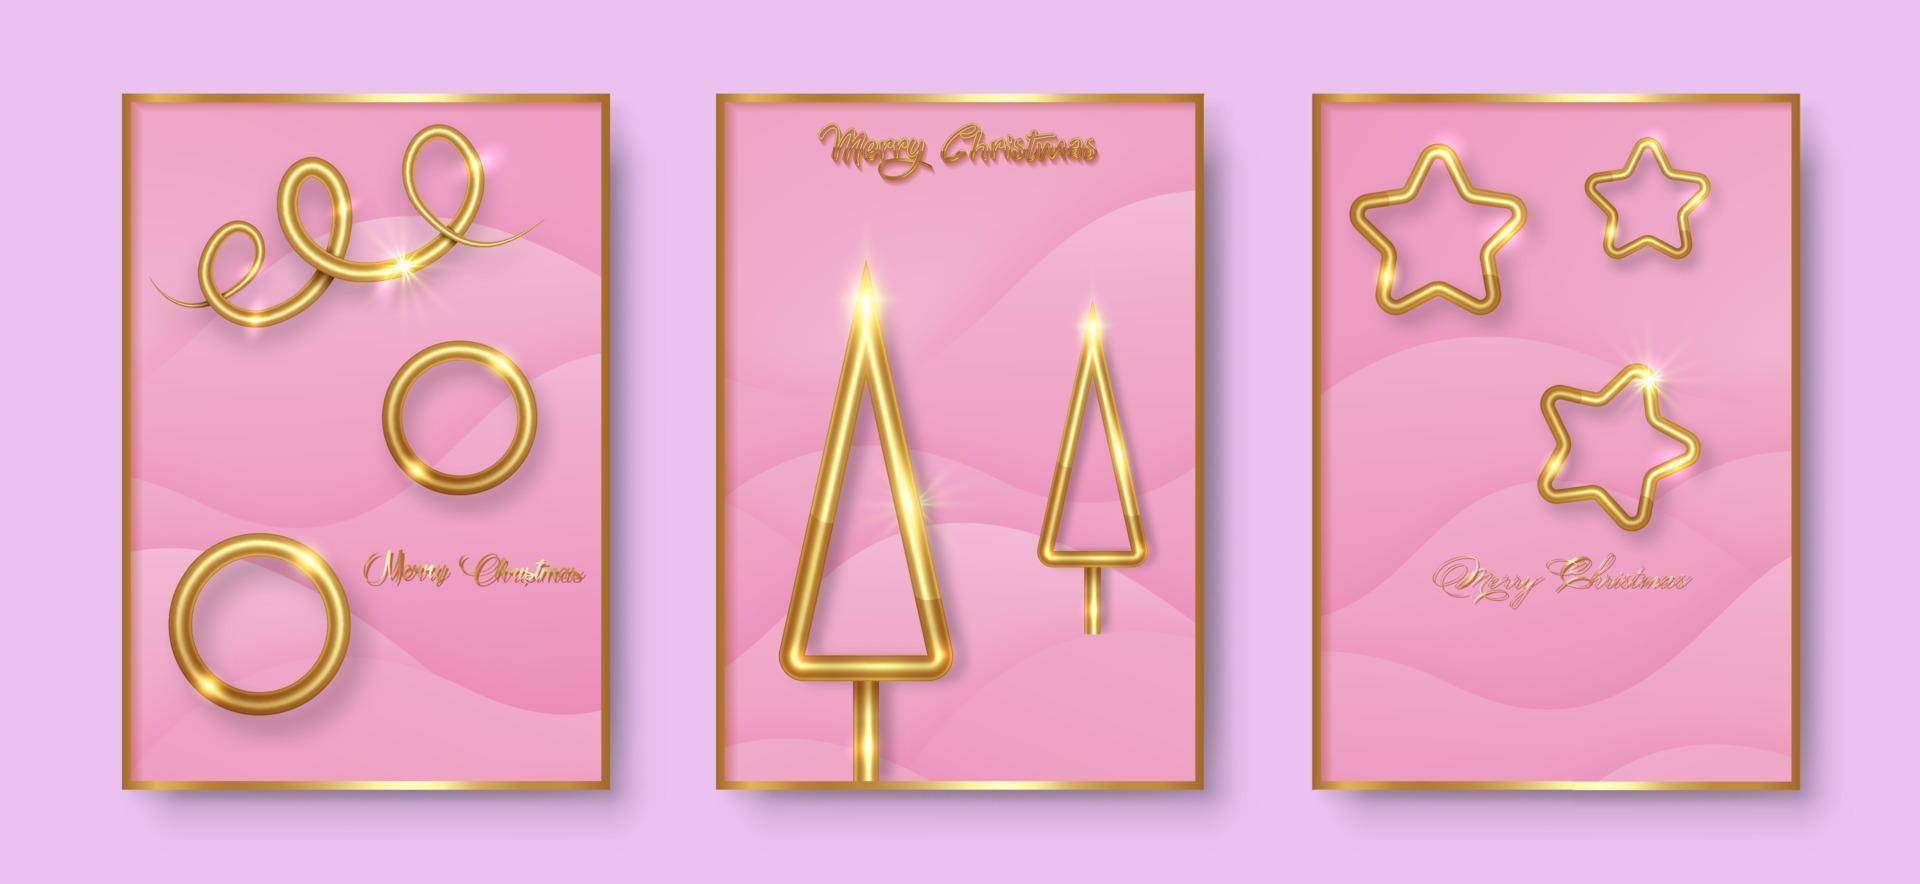 poner tarjetas feliz navidad textura dorada, elementos dorados de lujo, fondo de corte de papel rosa para calendario y tarjeta de saludos o invitaciones navideñas de invierno con decoraciones geométricas vector